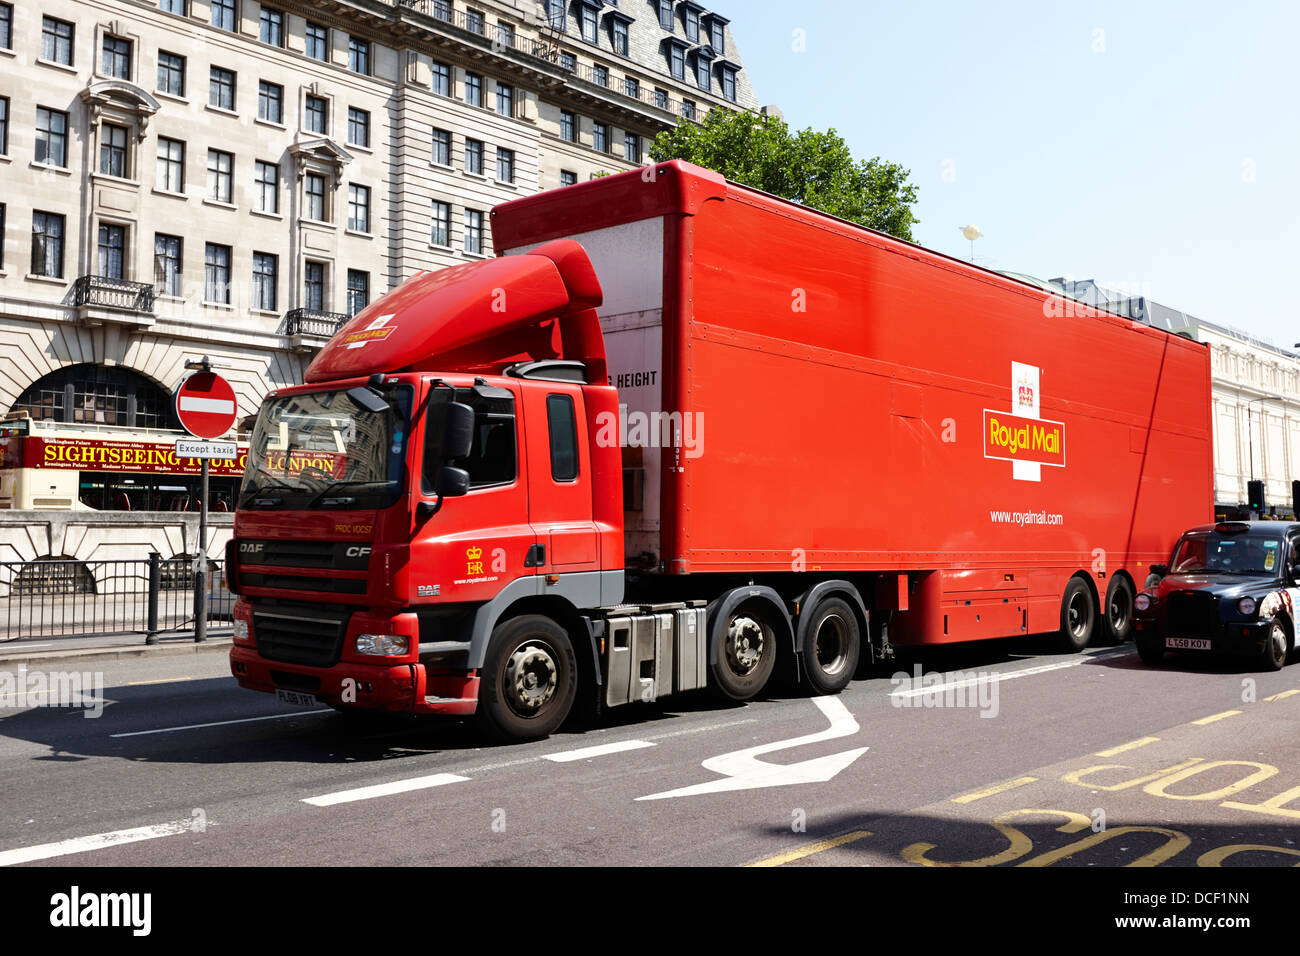 Royal Mail camión articulado de transporte por carretera llevando el correo a través de las calles de Londres, Inglaterra Foto de stock